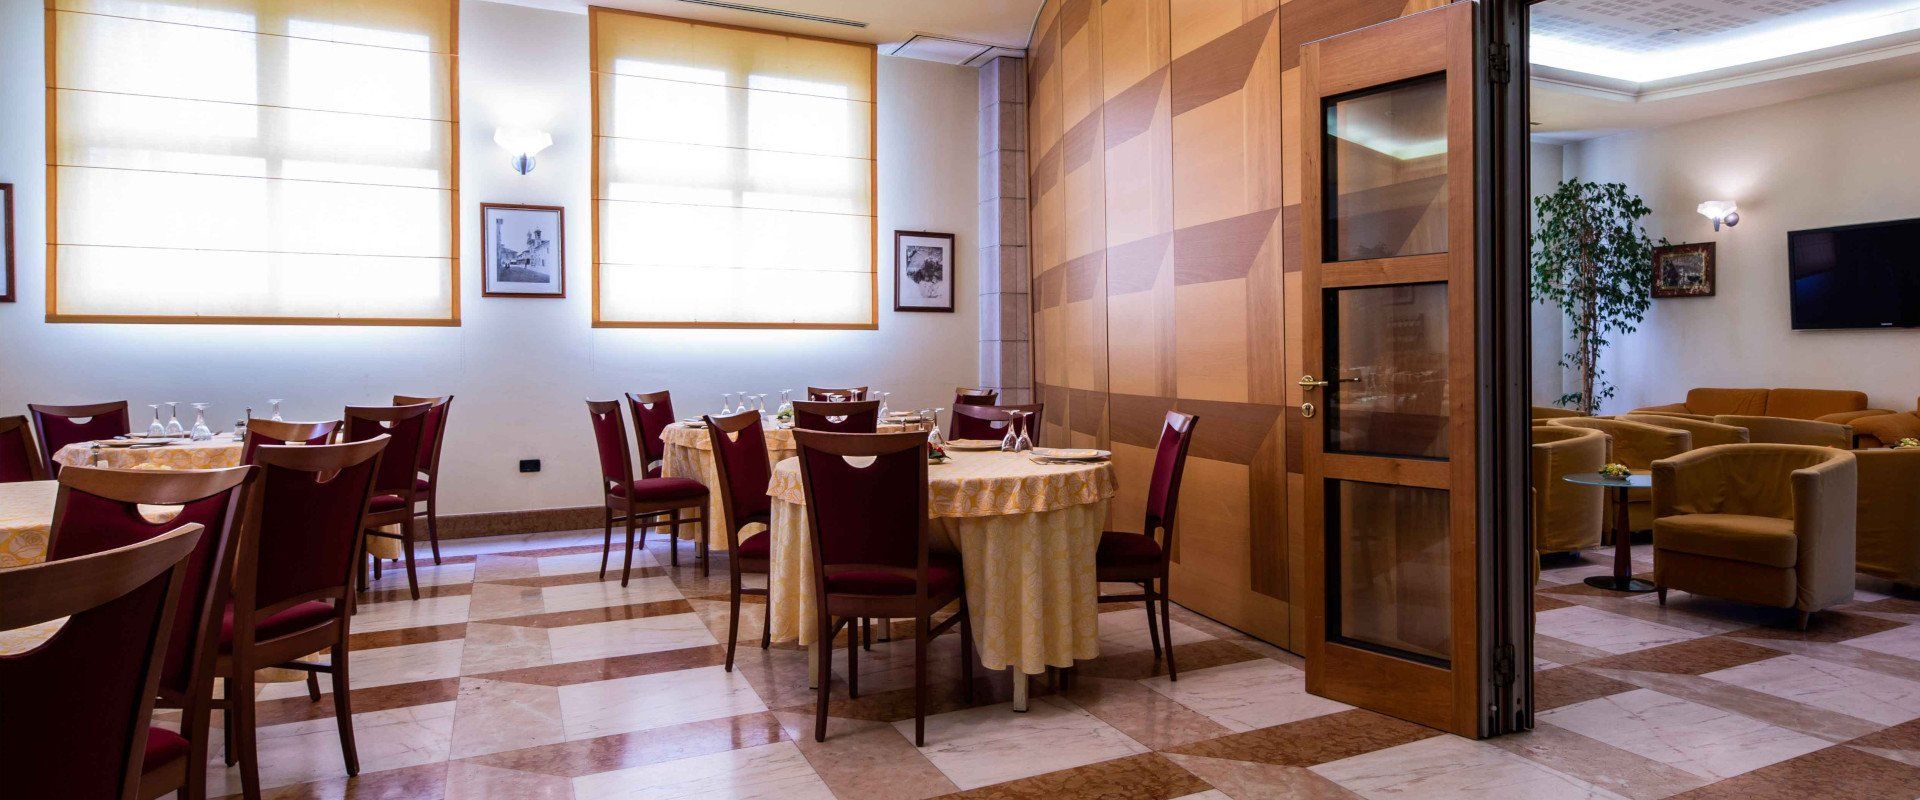 Ristorante cucina tipica bolognese - Hotel Persico's